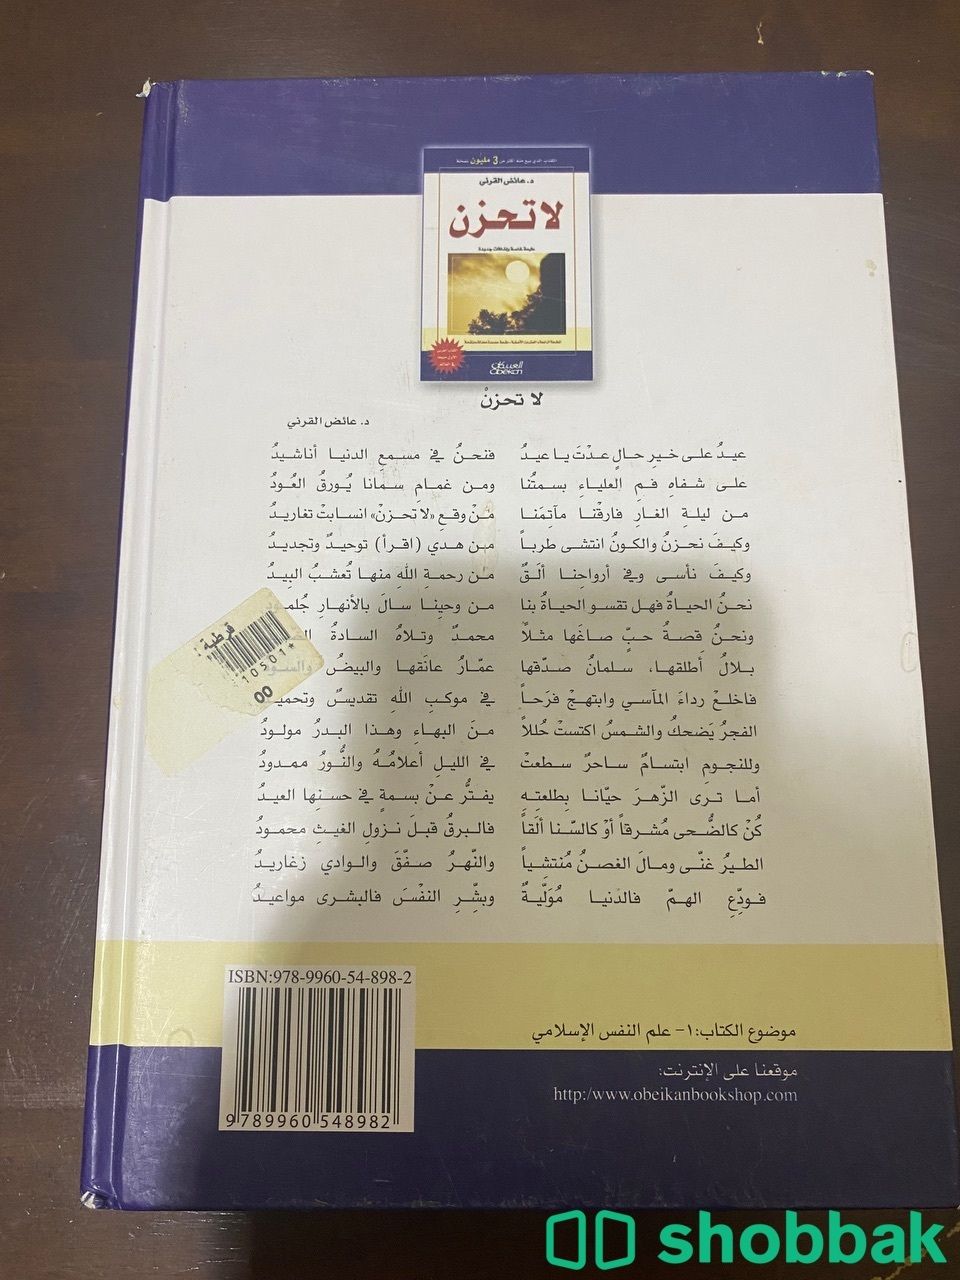 كتاب لا تحزن لدكتور عائض القرني Shobbak Saudi Arabia